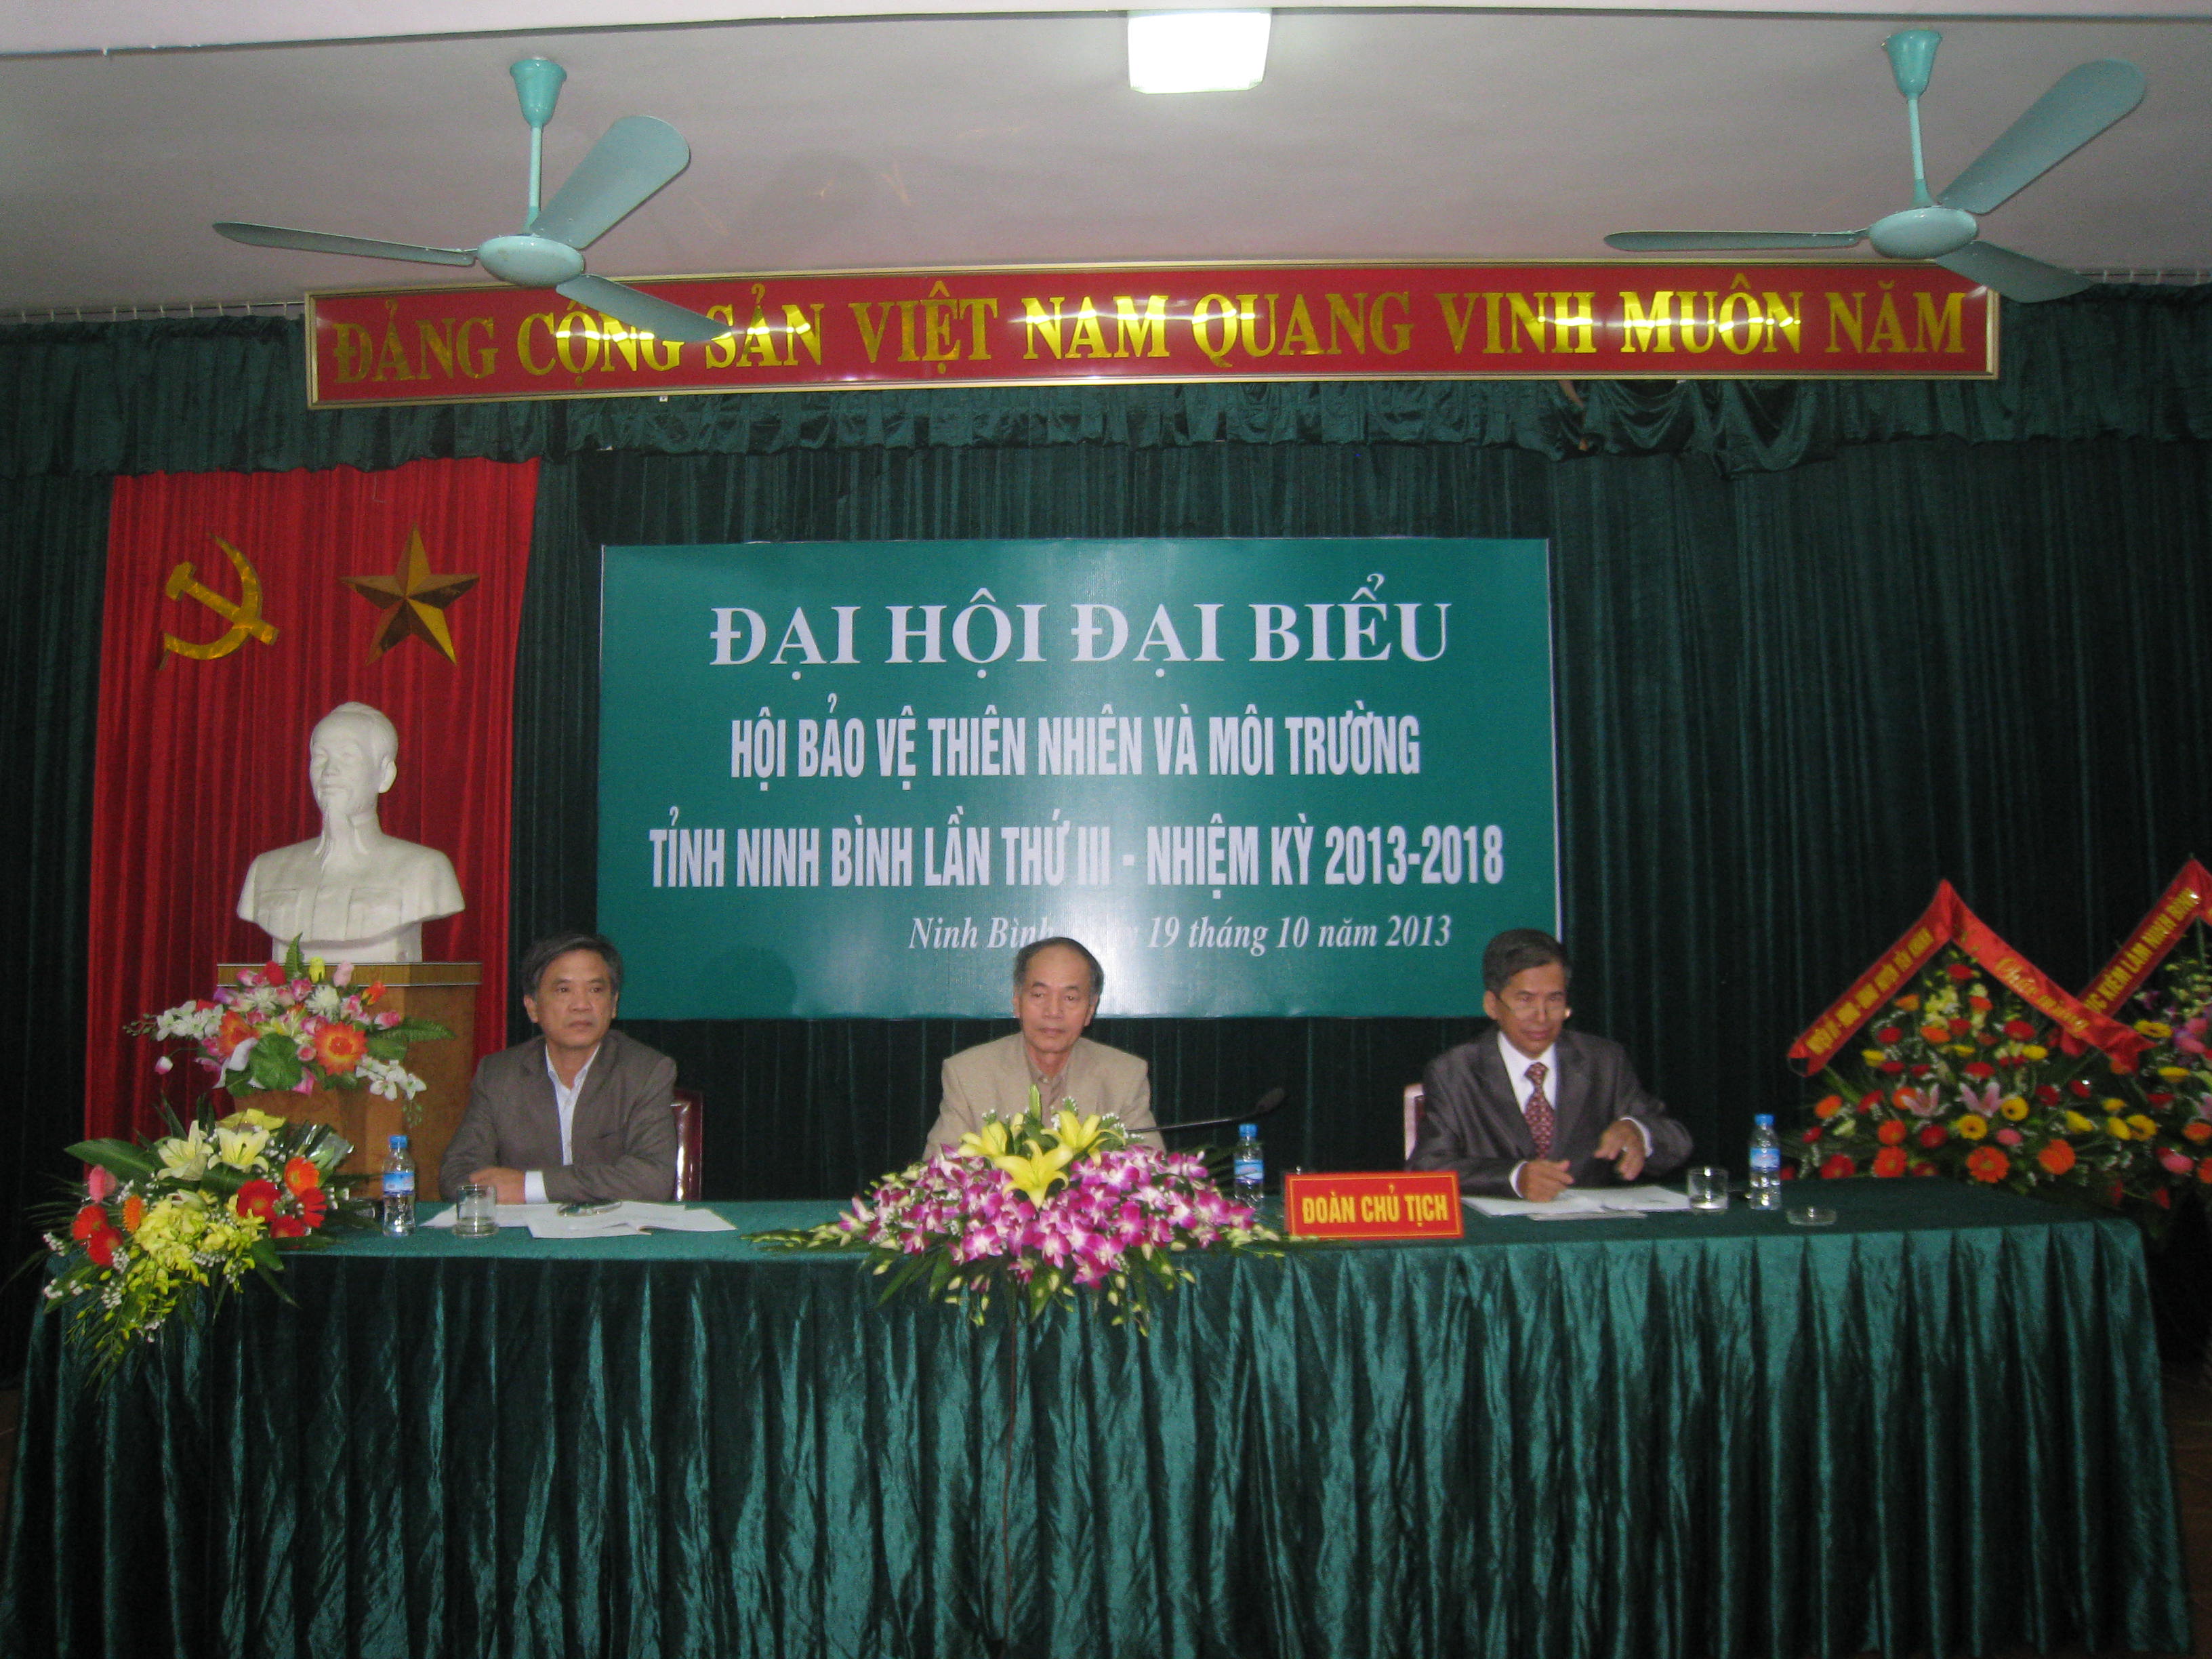 Đại hội đại biểu hội bảo vệ thiên nhiên và môi trường tỉnh Ninh Bình lần thứ III - Nhiệm Kỳ (2013 - 2018)